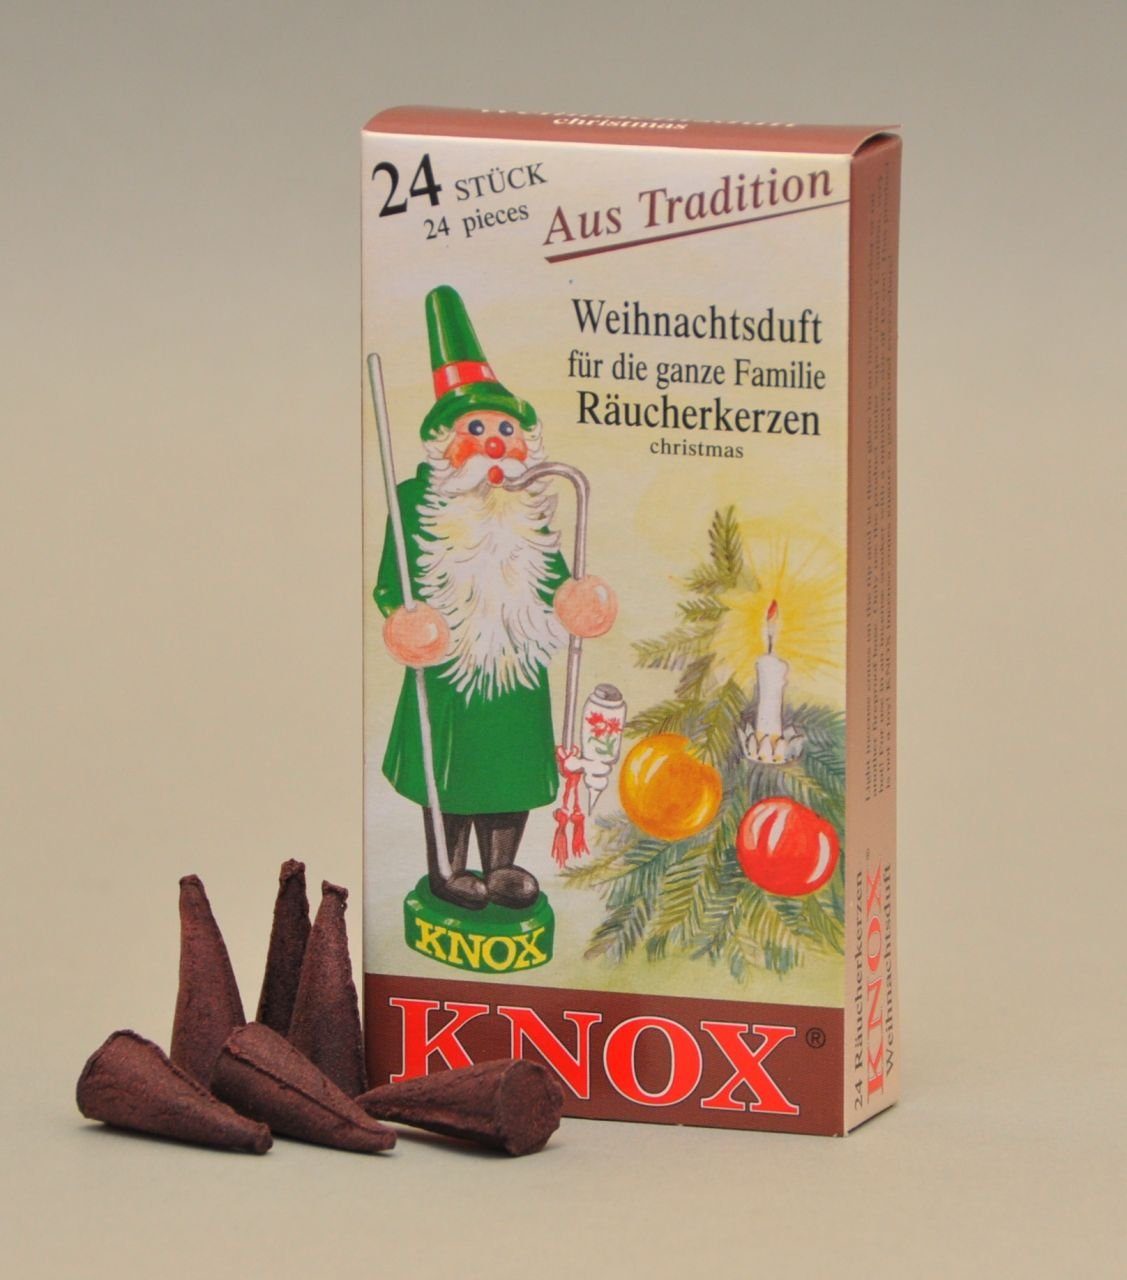 KNOX Räucherhaus Knox Räucherkerzen - Weihnachtsduft 24 Stück